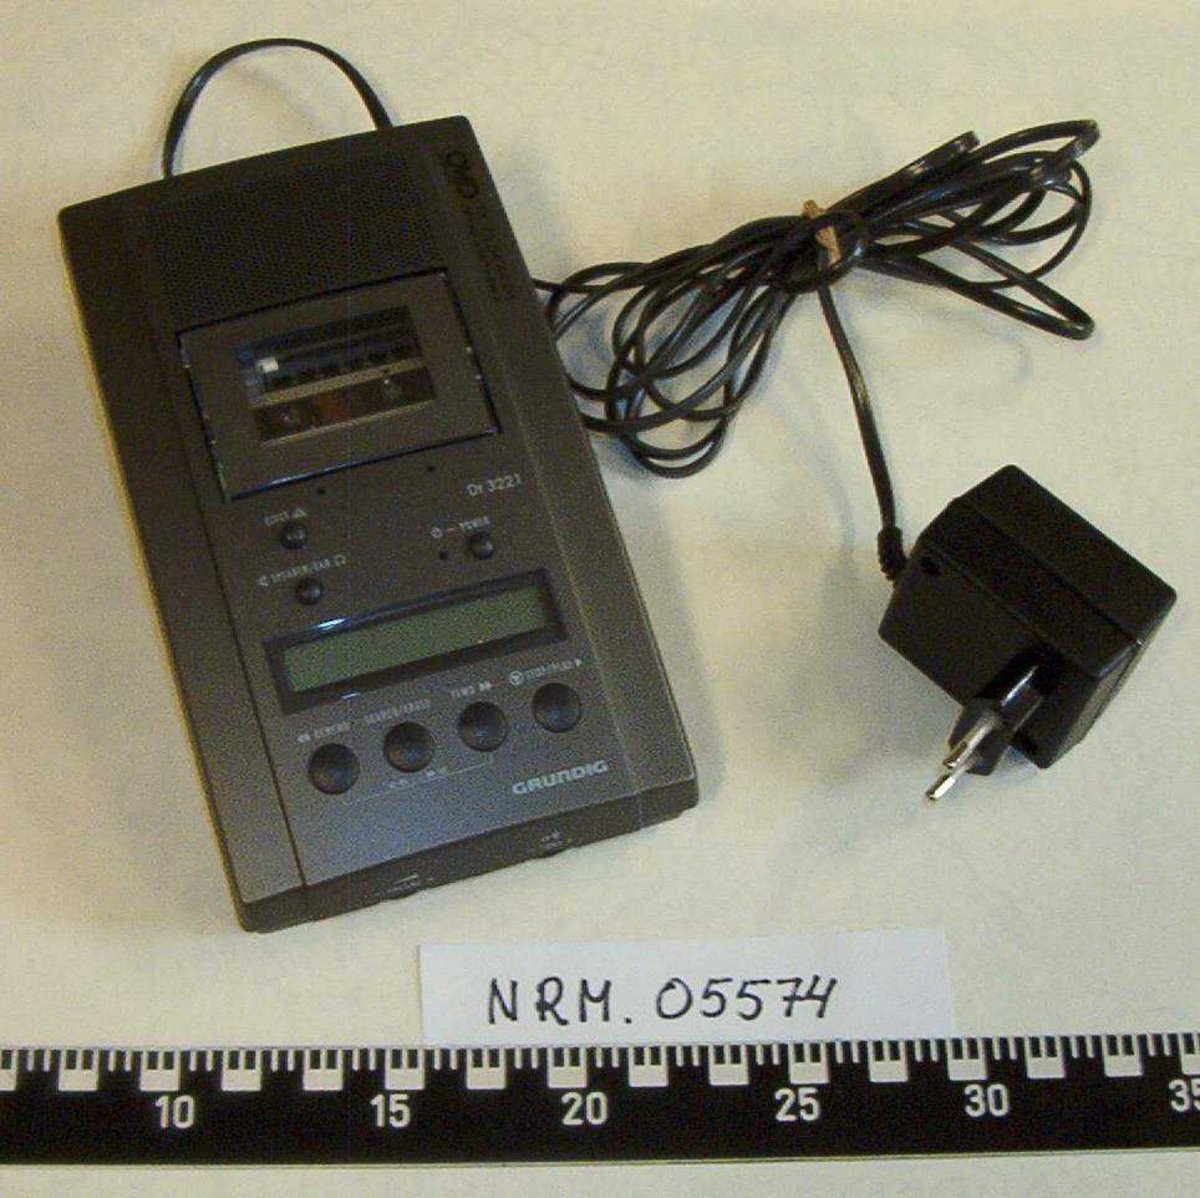 Lydbåndopptaker i tre deler:

NRM.05574a:  1 Opptaker Grundig dt. 3221,
                         CMP Kontor og Data Trondheim,
                         med tilhørende adapter.
NRM.05574b:  1 Fotpedal Grundig, Type 535B, 
                         med ledning for tilkobling opptaker.
NRM.05574c:  1 Headset Grundig, 
                         med ledning for tilkobling opptaker.